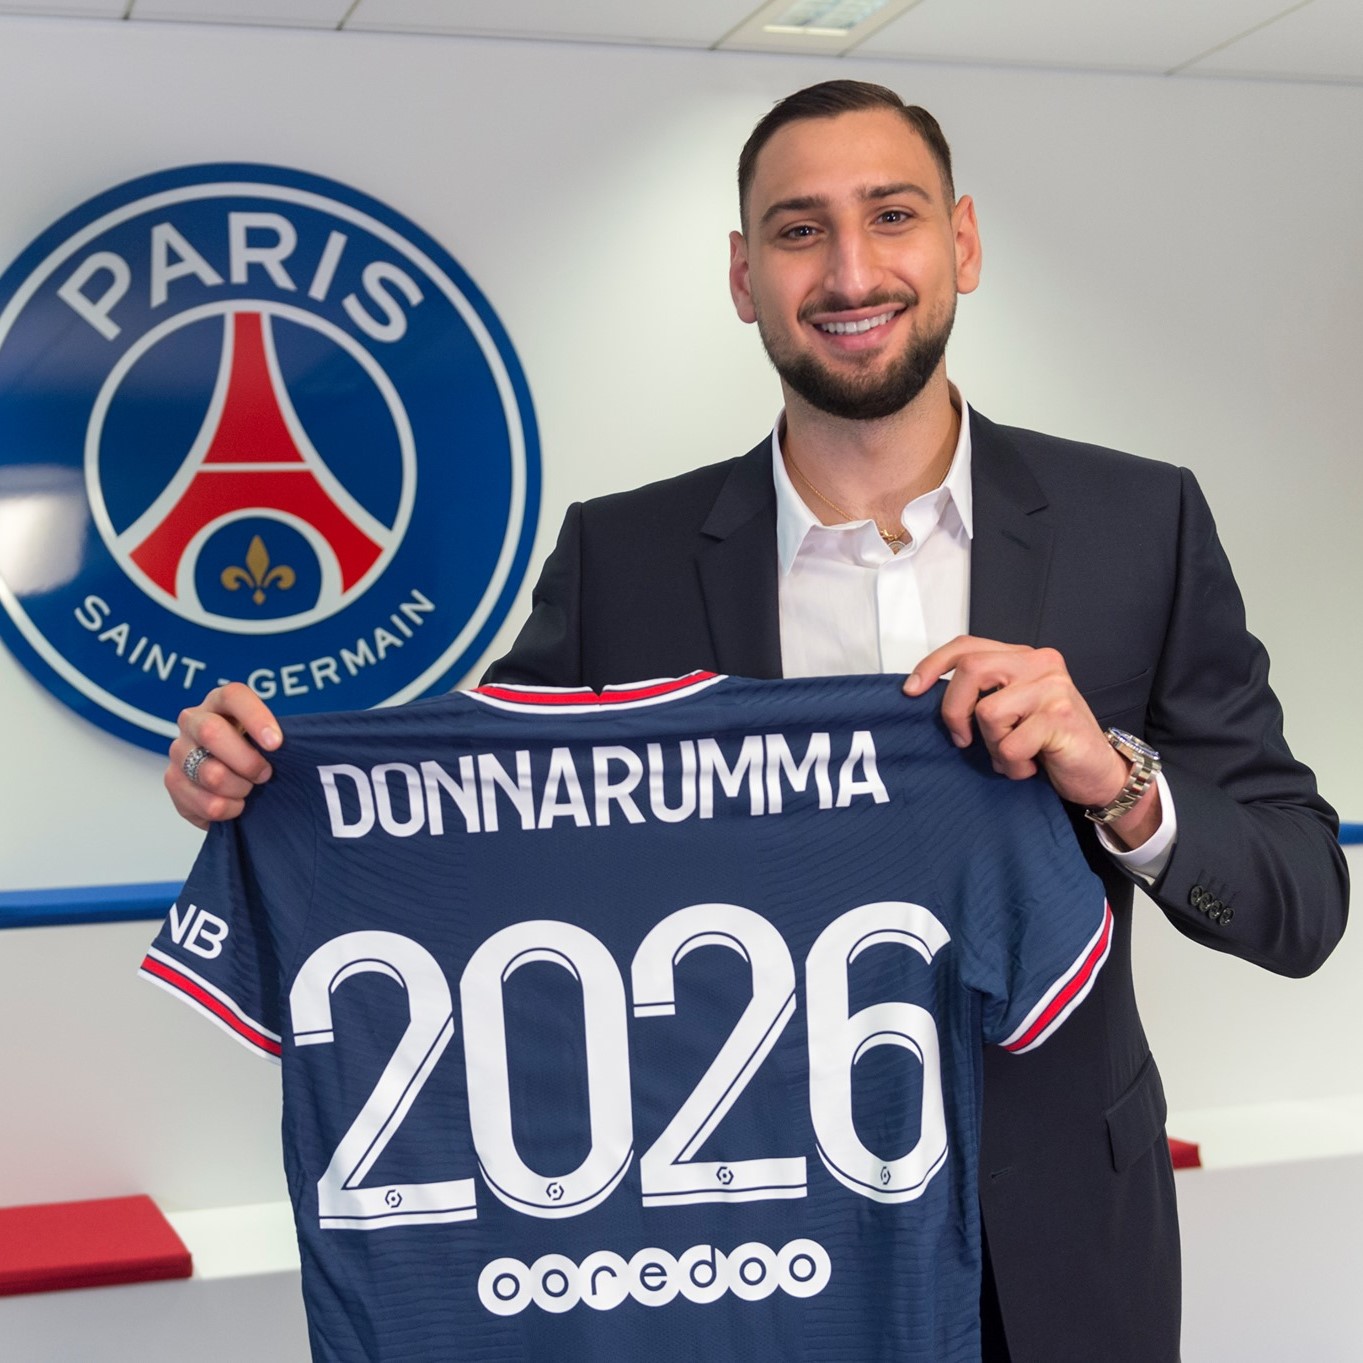 多纳鲁马正式与巴黎圣杰门签订了一份为期5年的合同，他展示的球衣意味着他将效力至2026年 。（圣杰门官方脸书照片）

